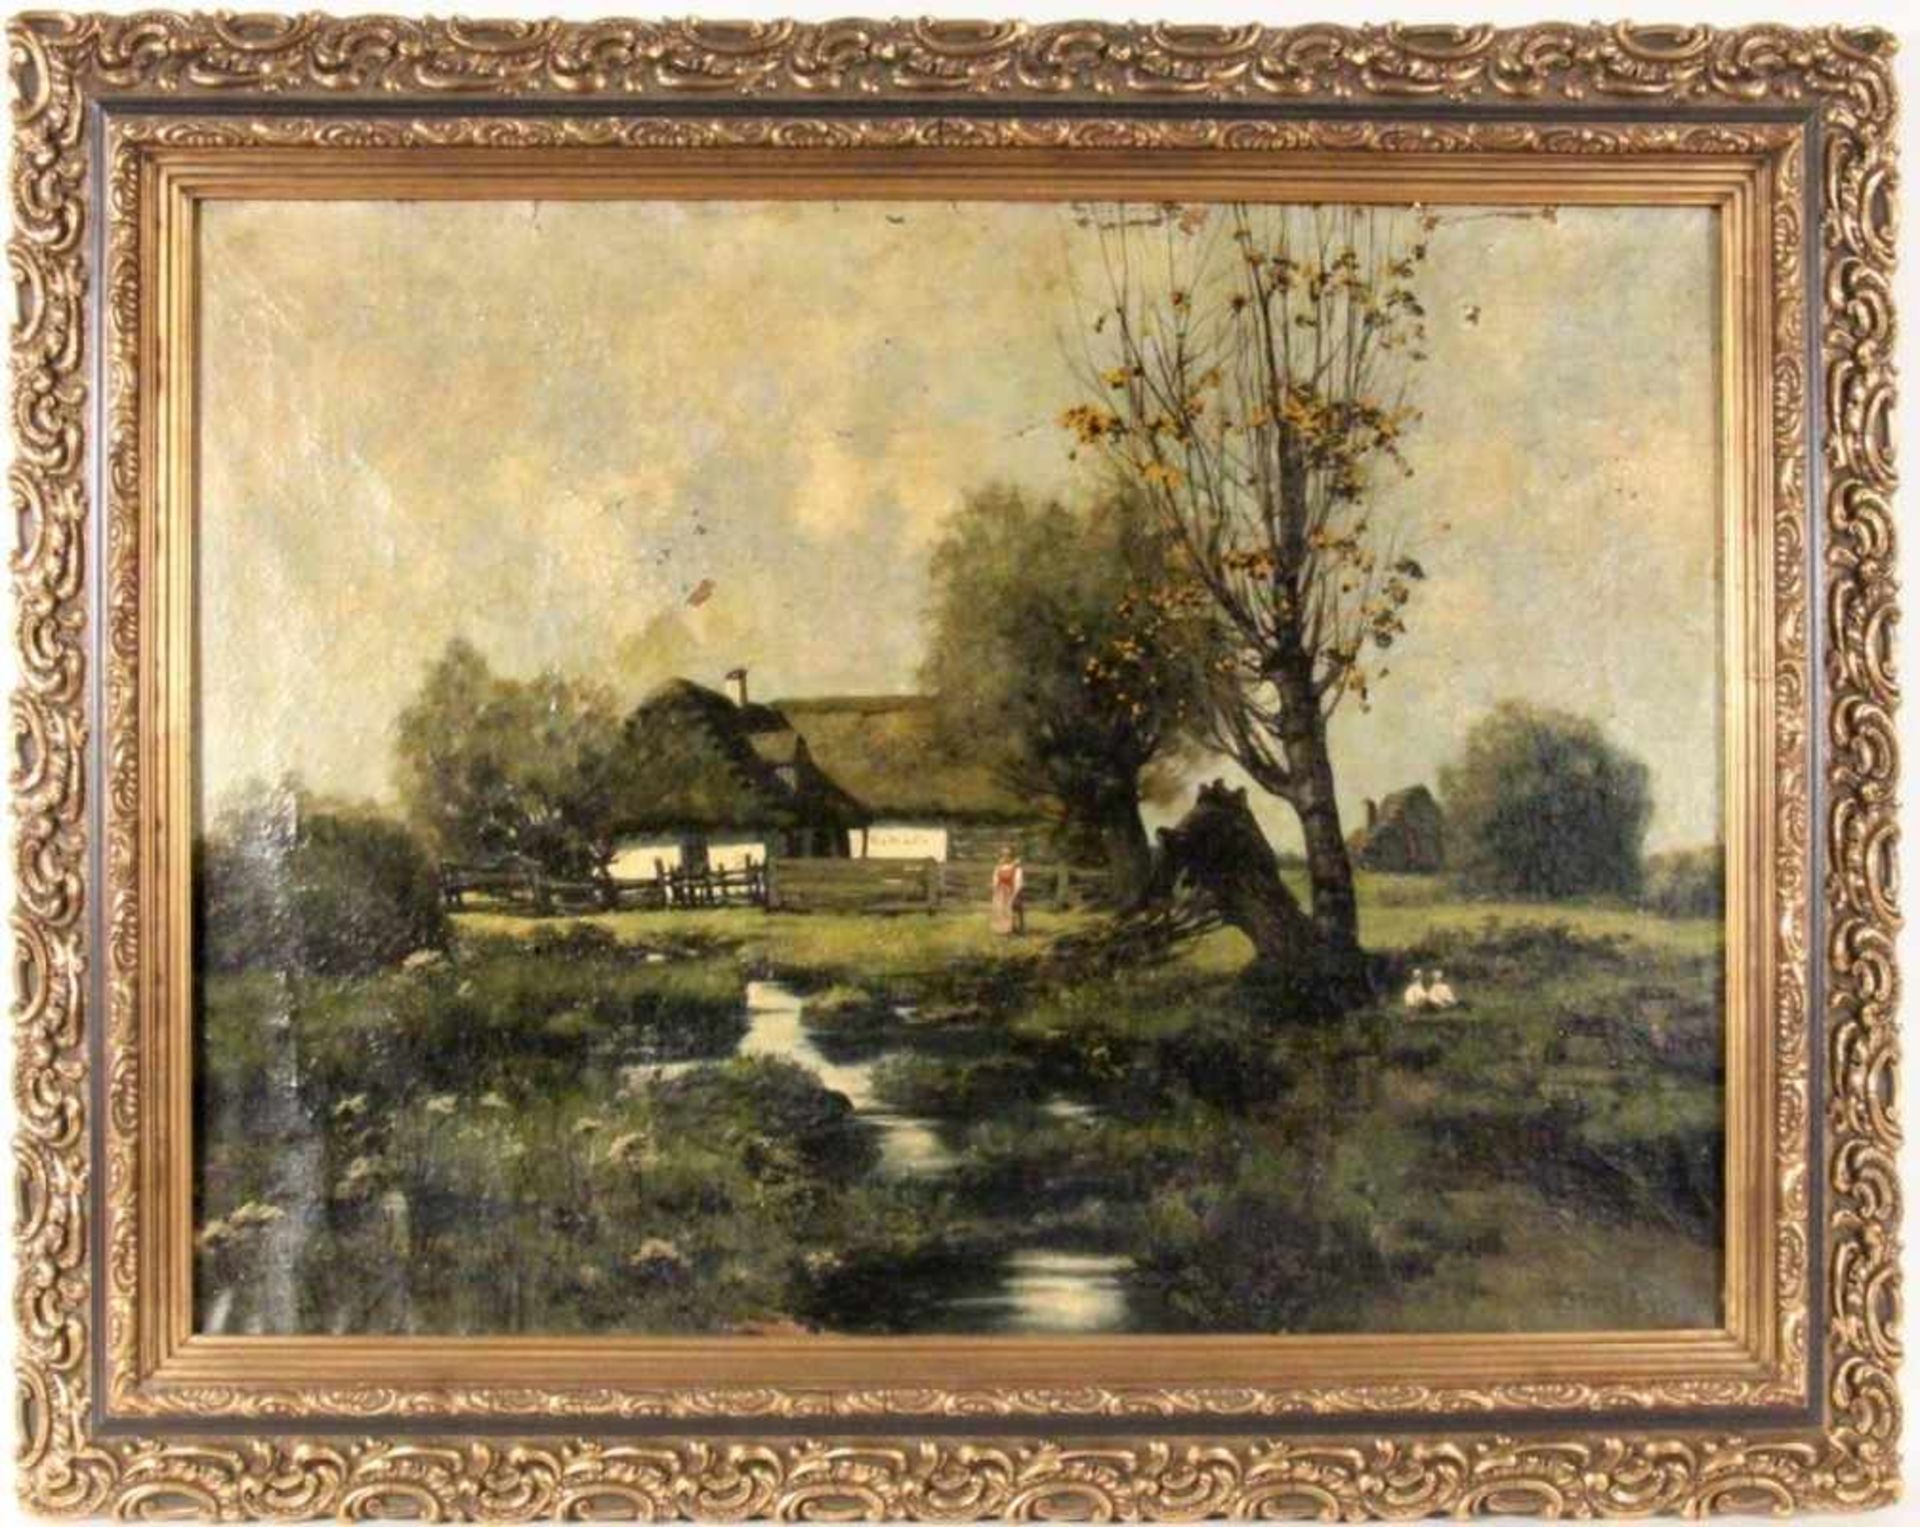 STASIAK, LUDWIK Polnischer Maler, Bochnia, 1858 - 1924 Krakau Bauernhof mit Gänsen und Bäuerin. Öl/